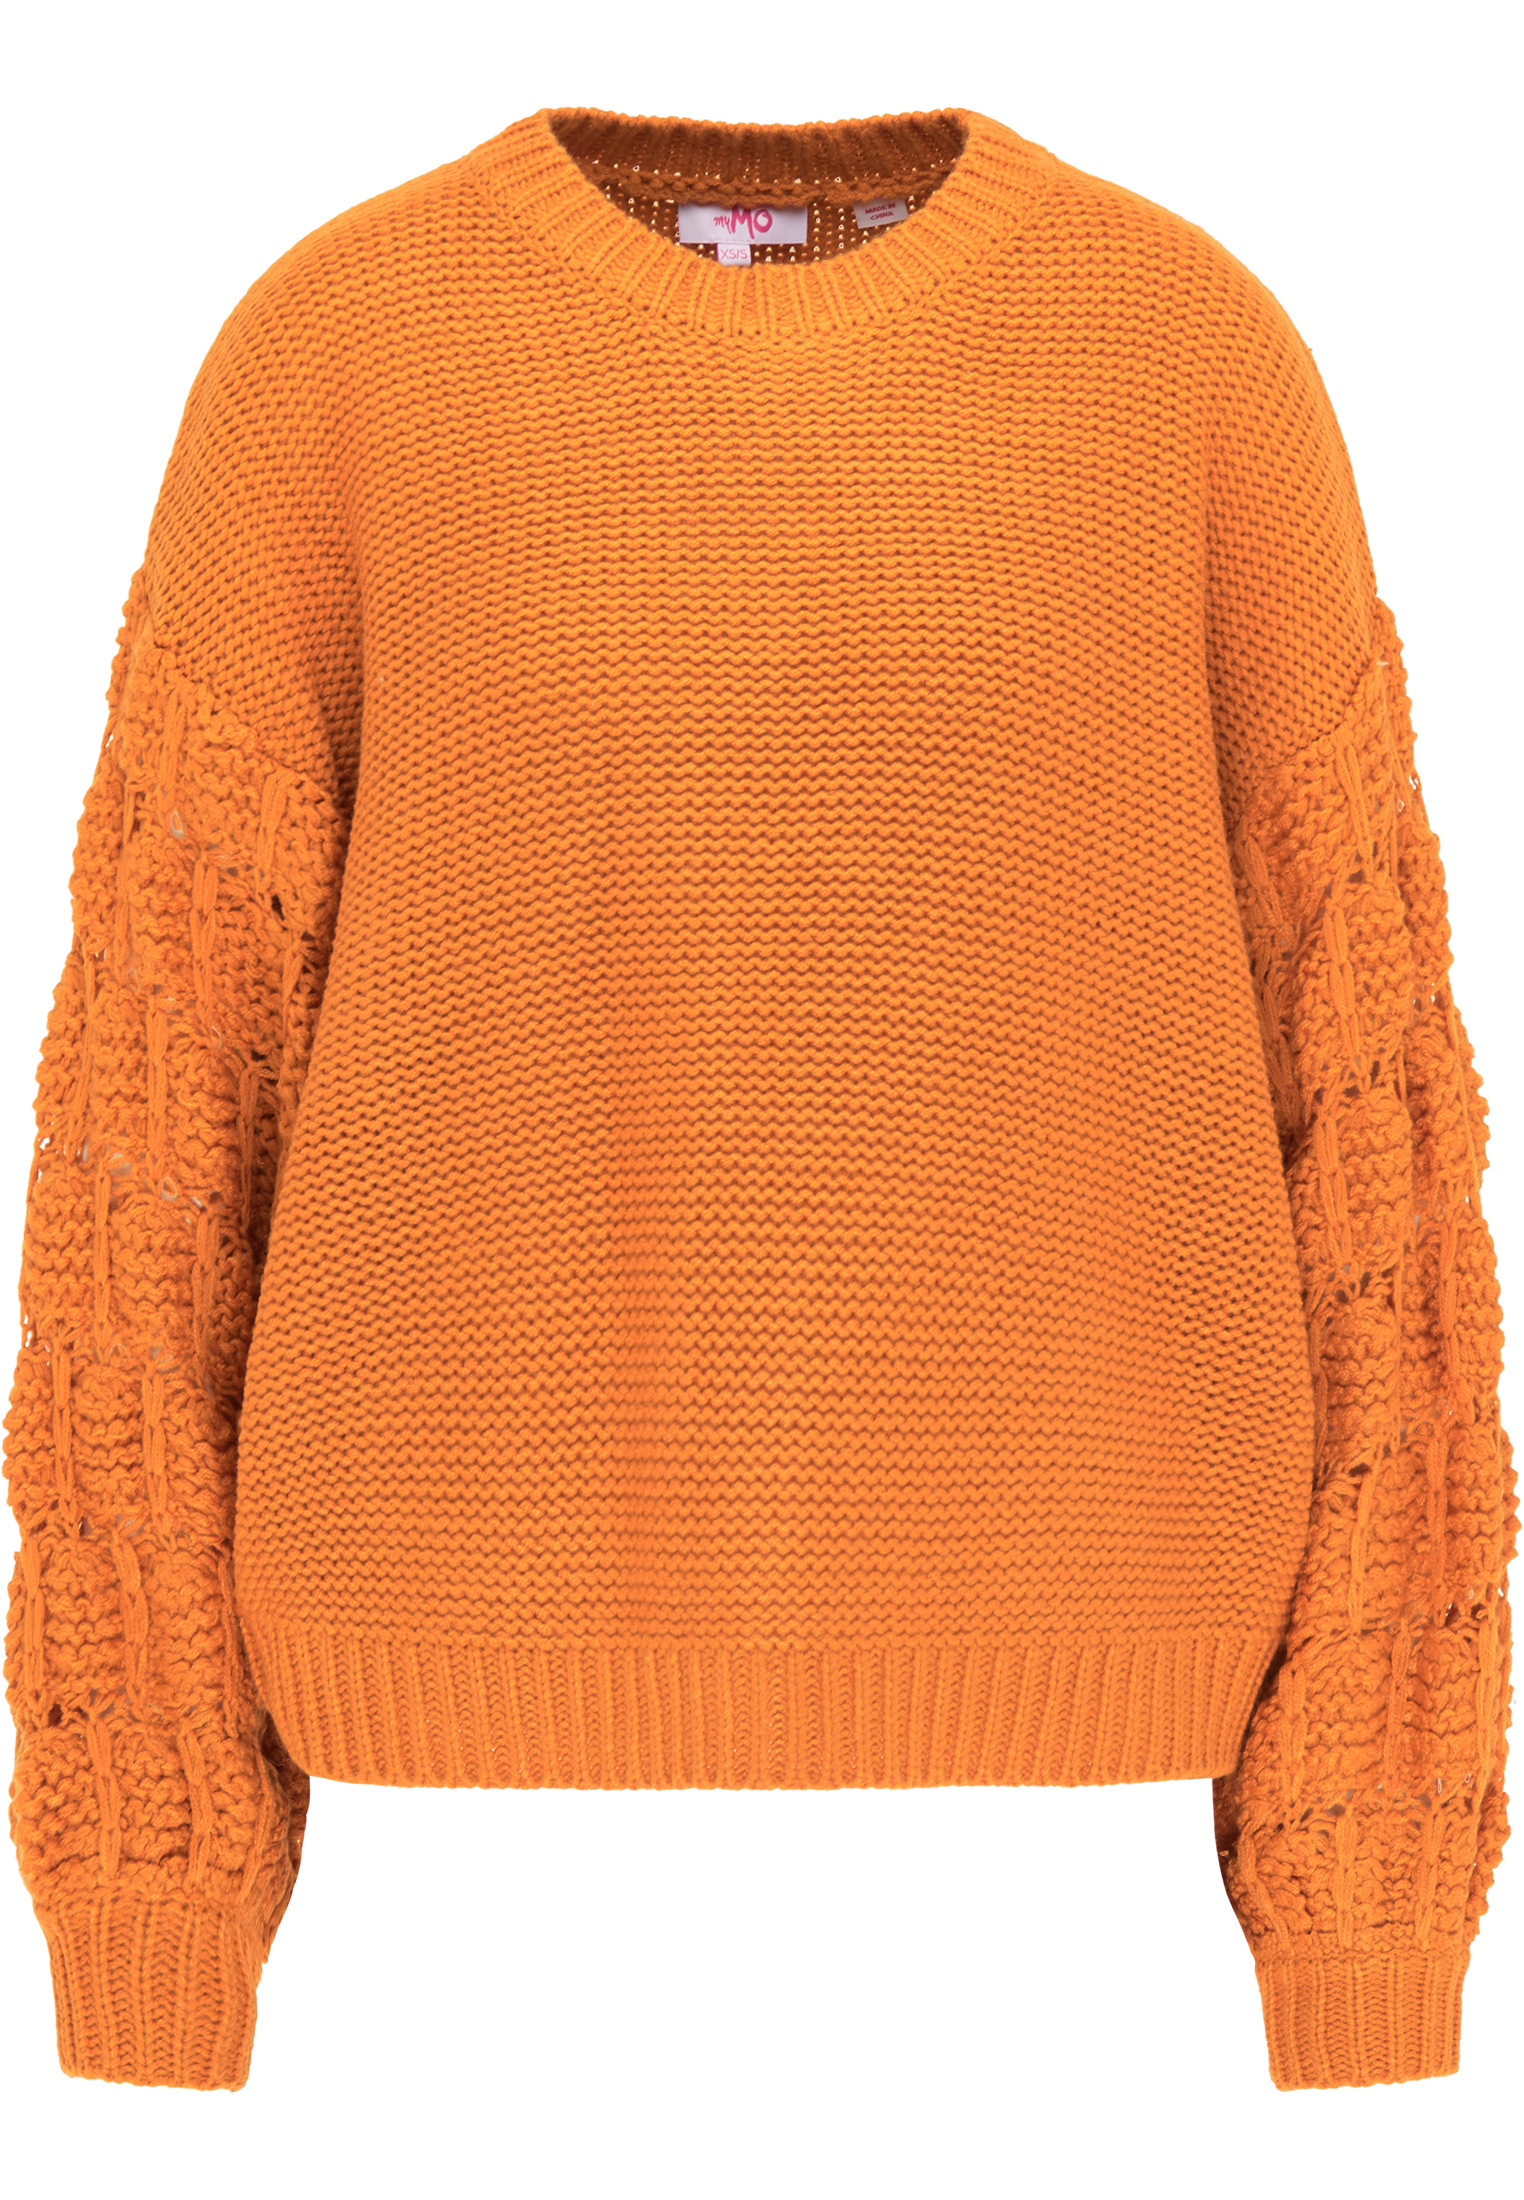 Odzież Kobiety MYMO Sweter w kolorze Ciemnopomarańczowym 